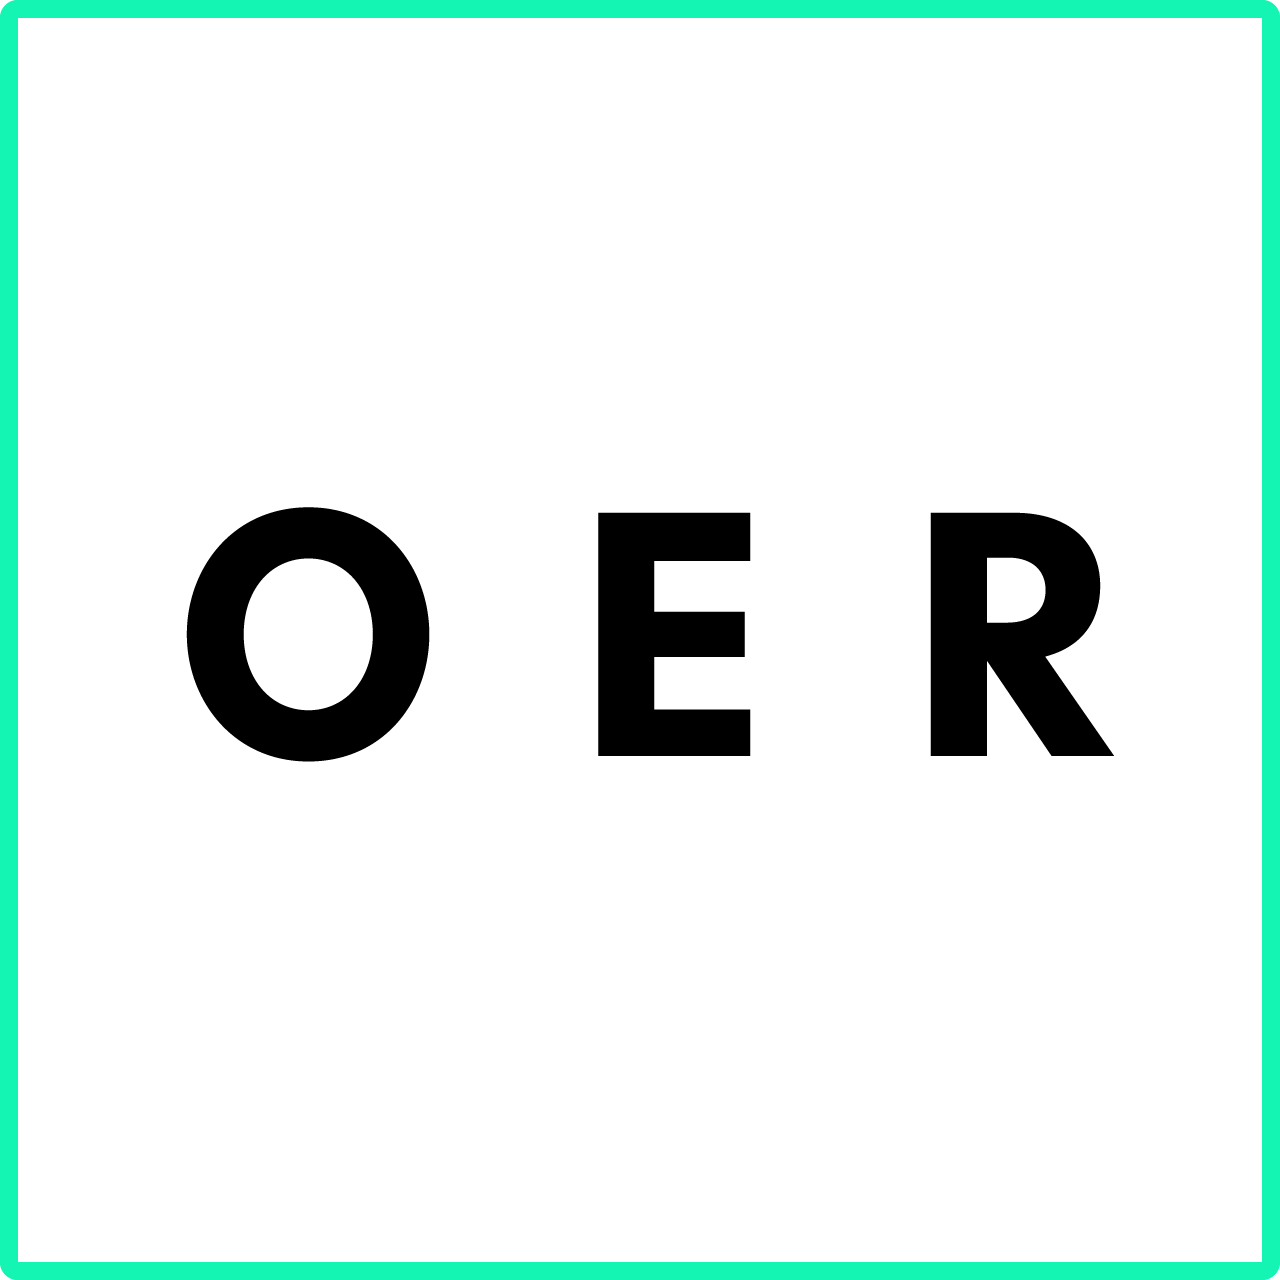 Grafik zu Open Educational Resources bestehend aus den Buchstaben "OER"